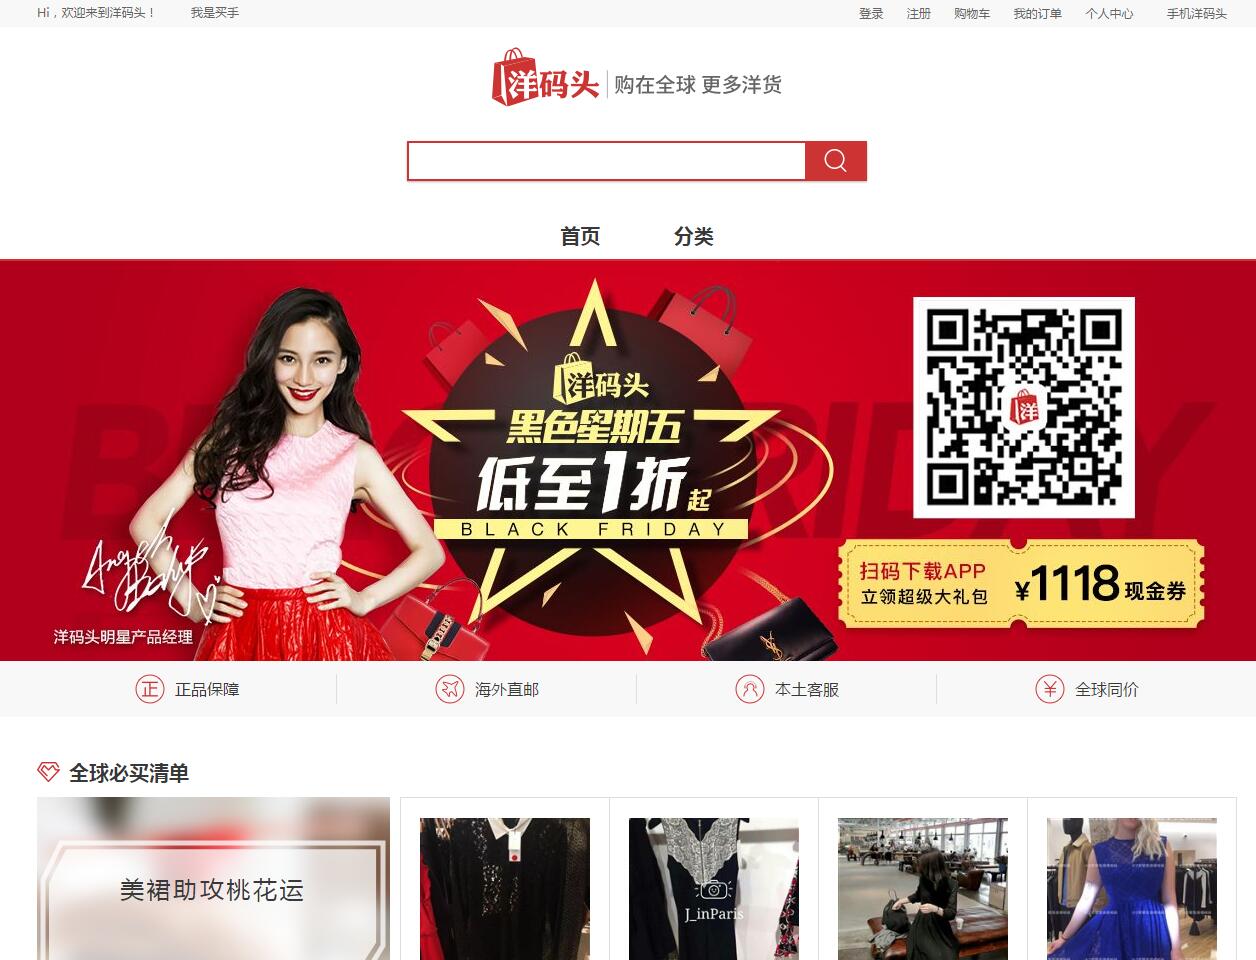 china online marketing strategy - ymatou